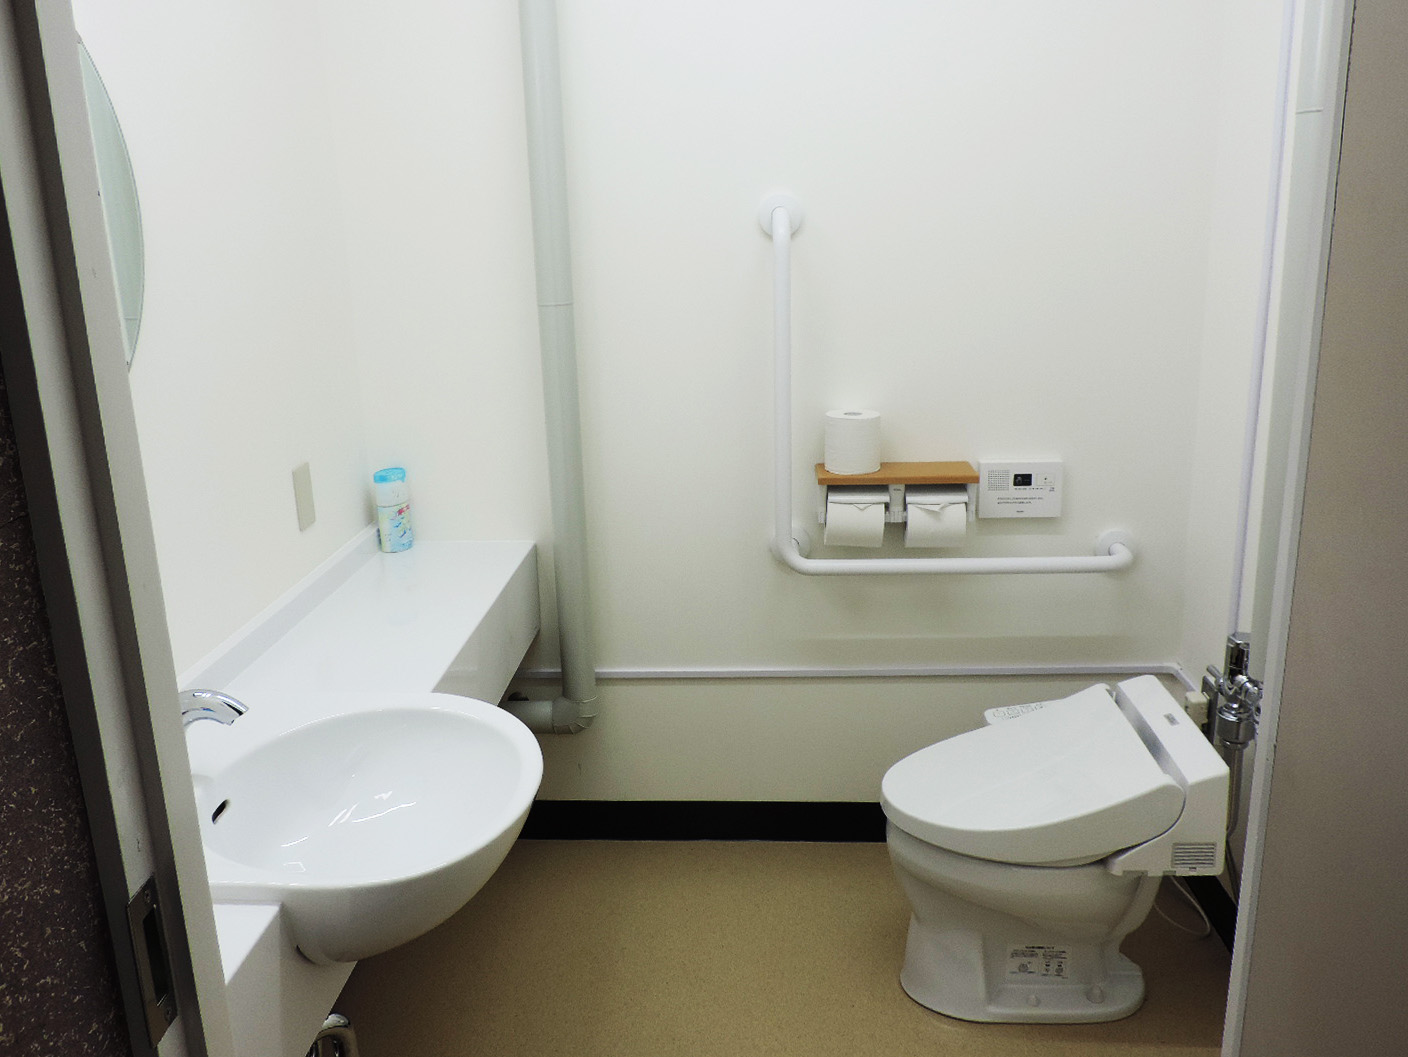 練習室D奥に女性用トイレを追加しました 福岡市民会館